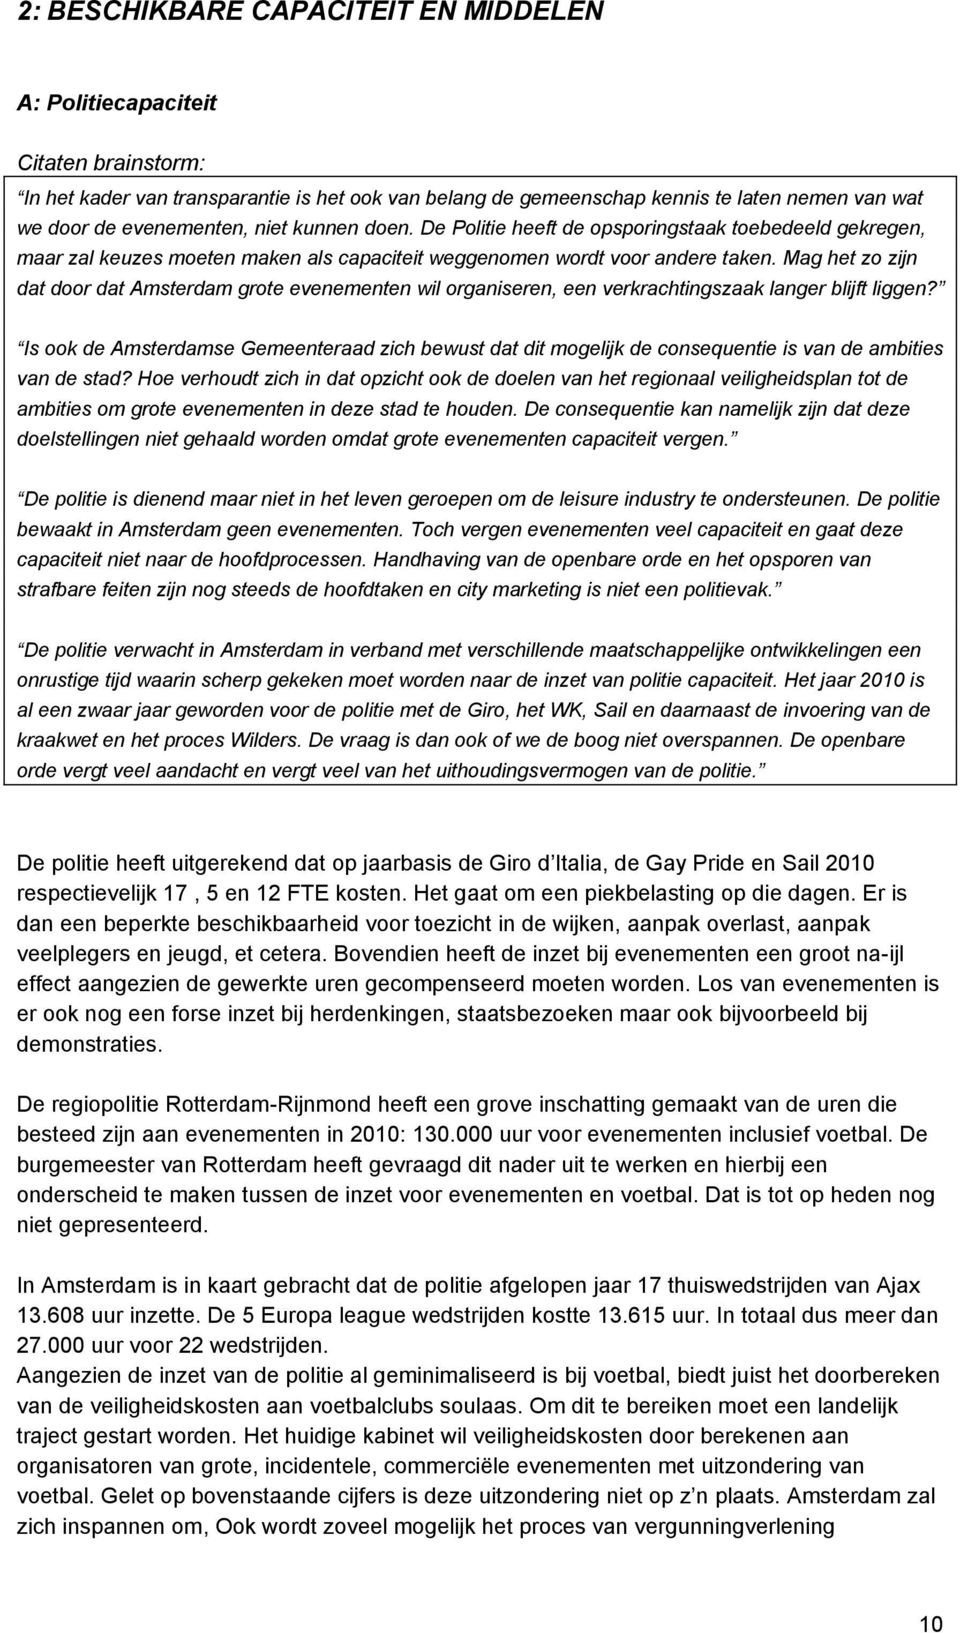 Mag het zo zijn dat door dat Amsterdam grote evenementen wil organiseren, een verkrachtingszaak langer blijft liggen?